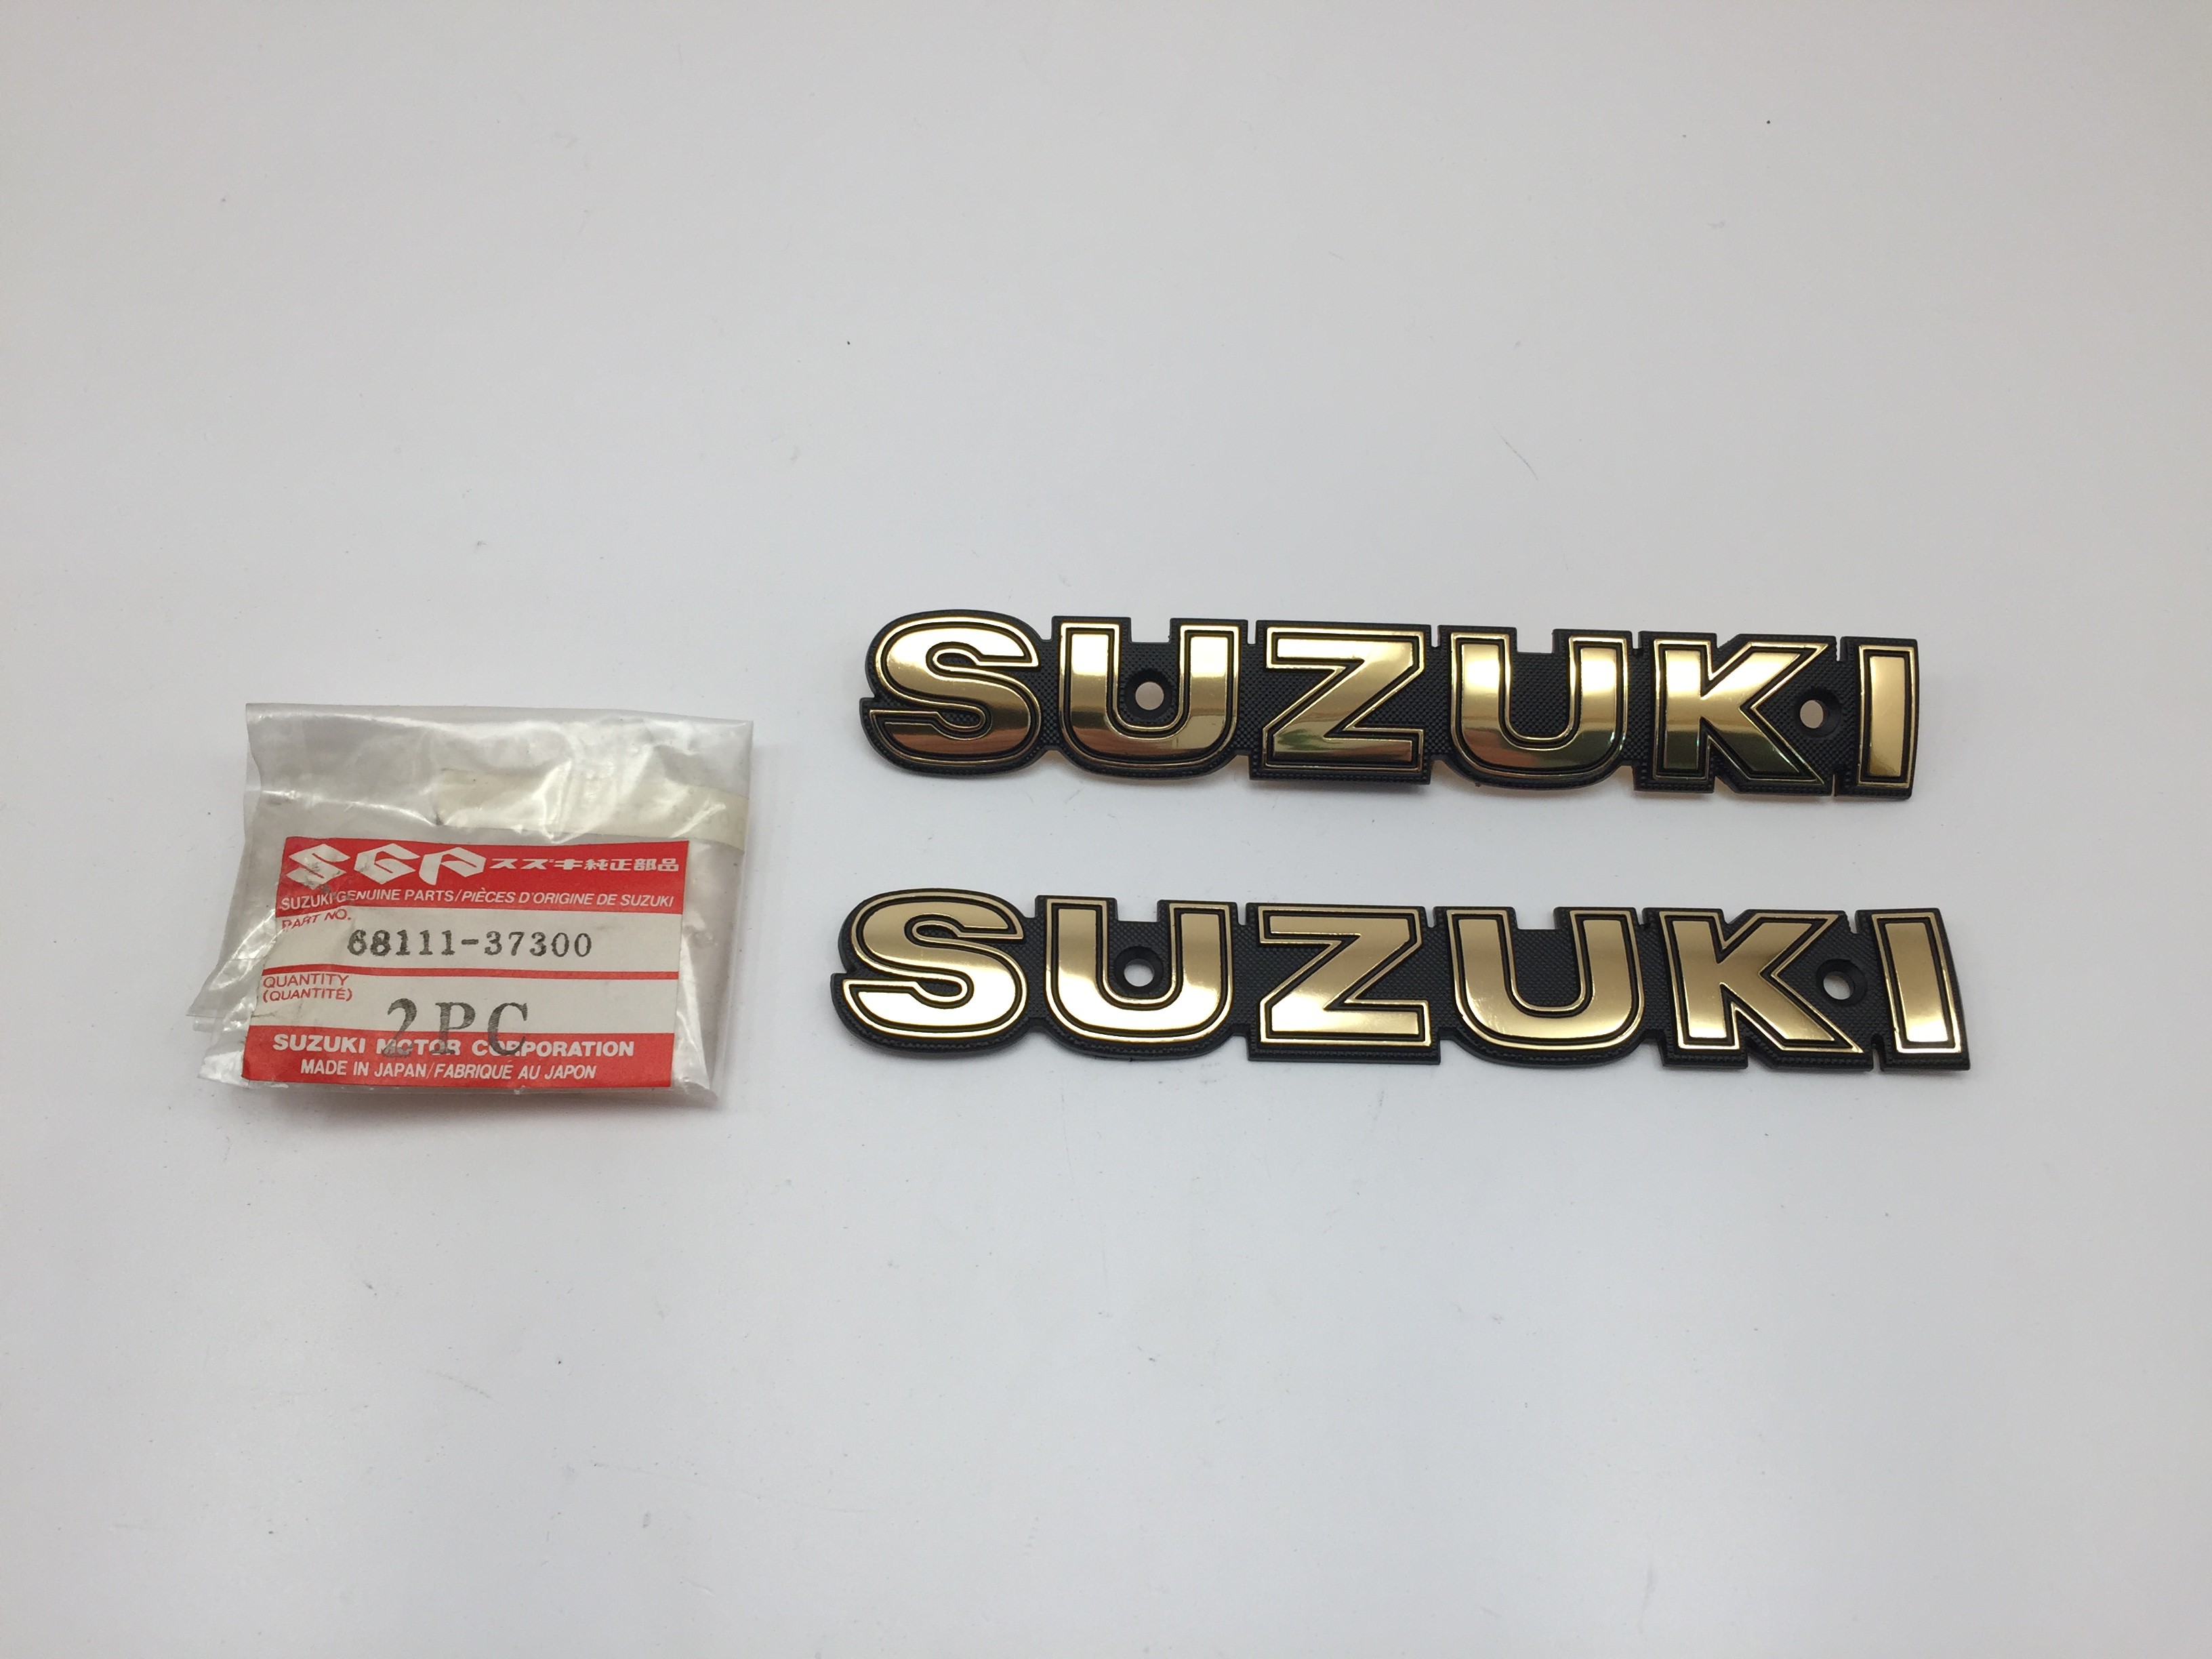 Emblème Suzuki pour GN125 et GN250 (89-00) Pièce Neuve d'origine